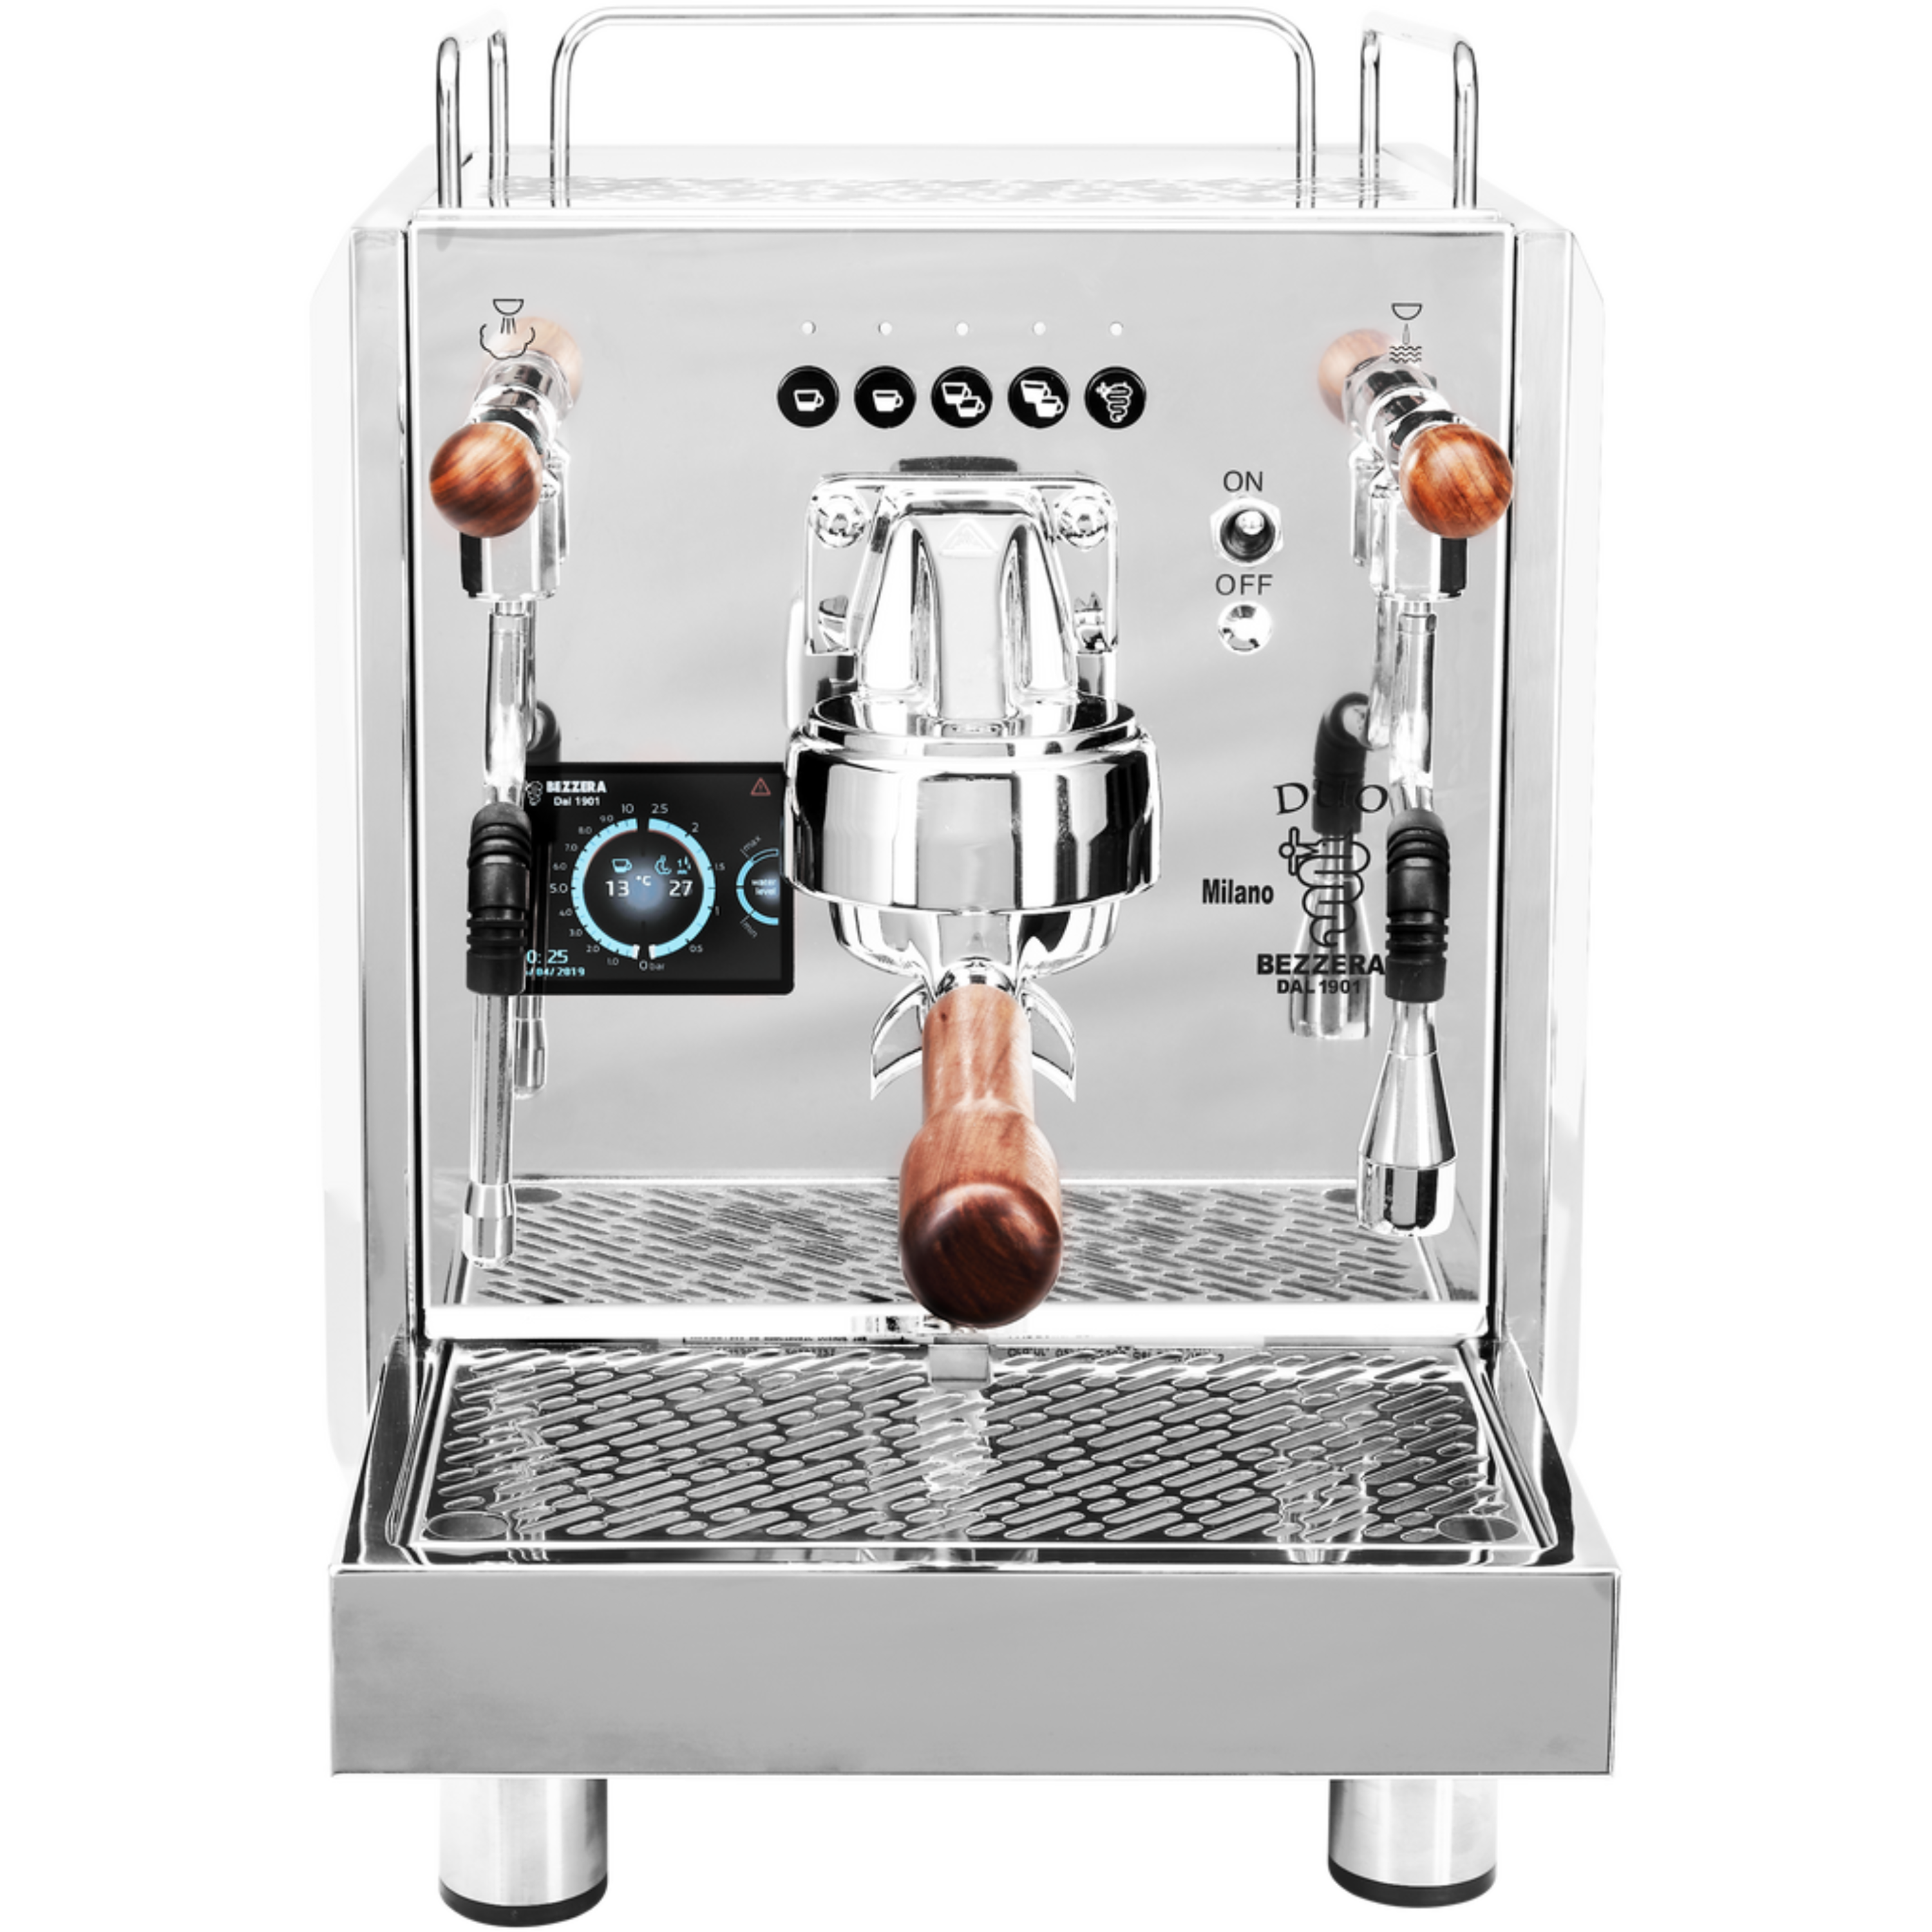 ماكينة قهوة מקצועית Bezzera Duo DE